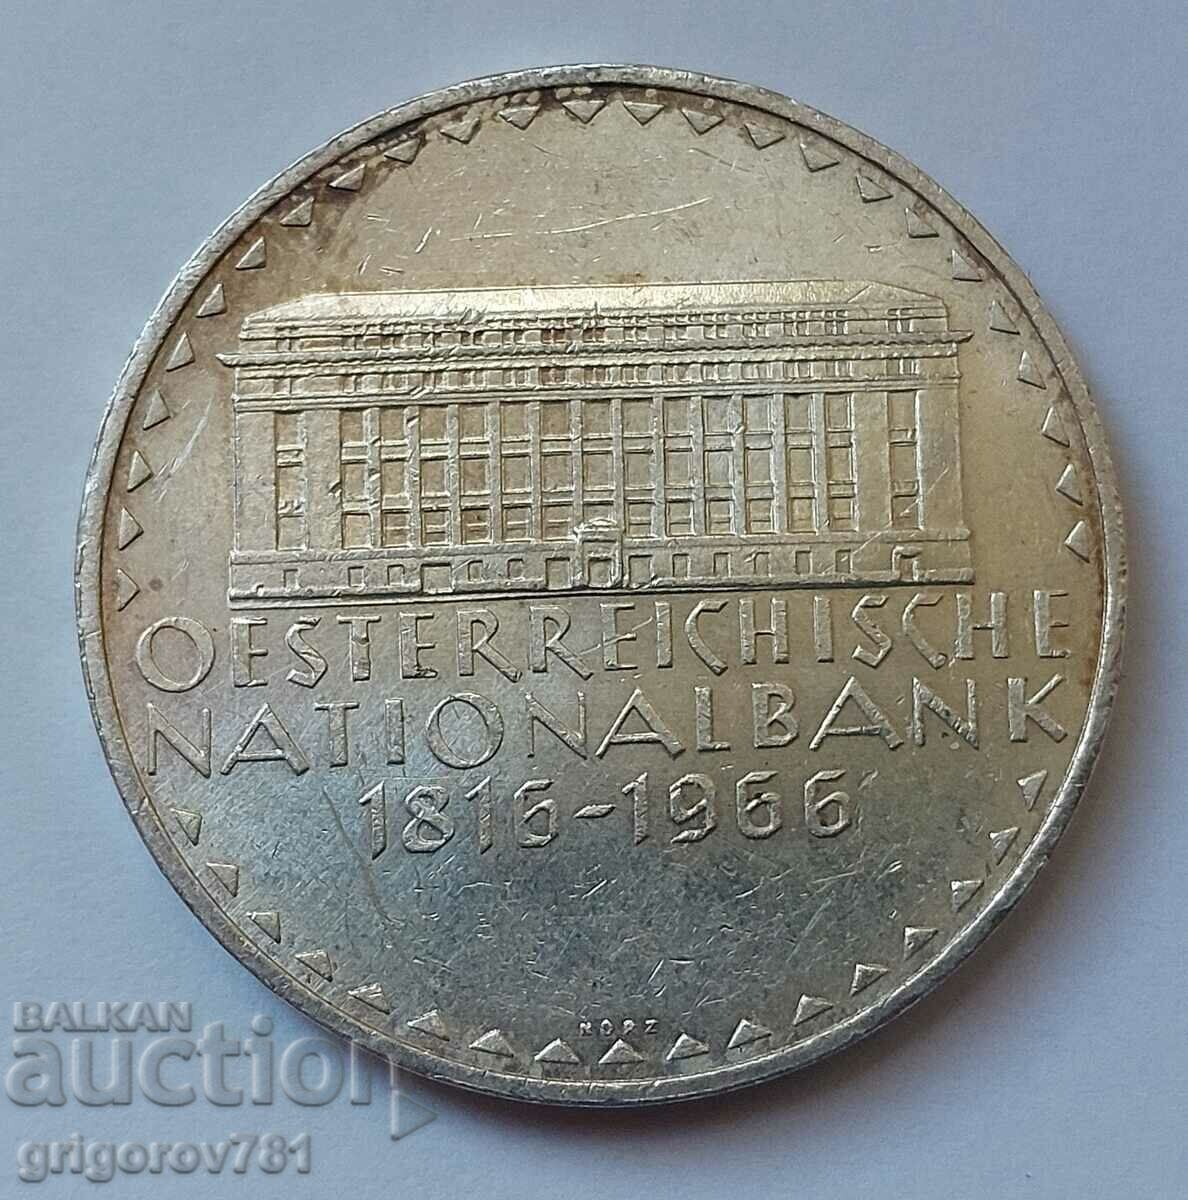 50 Shilling Silver Αυστρία 1966 - Ασημένιο νόμισμα #9